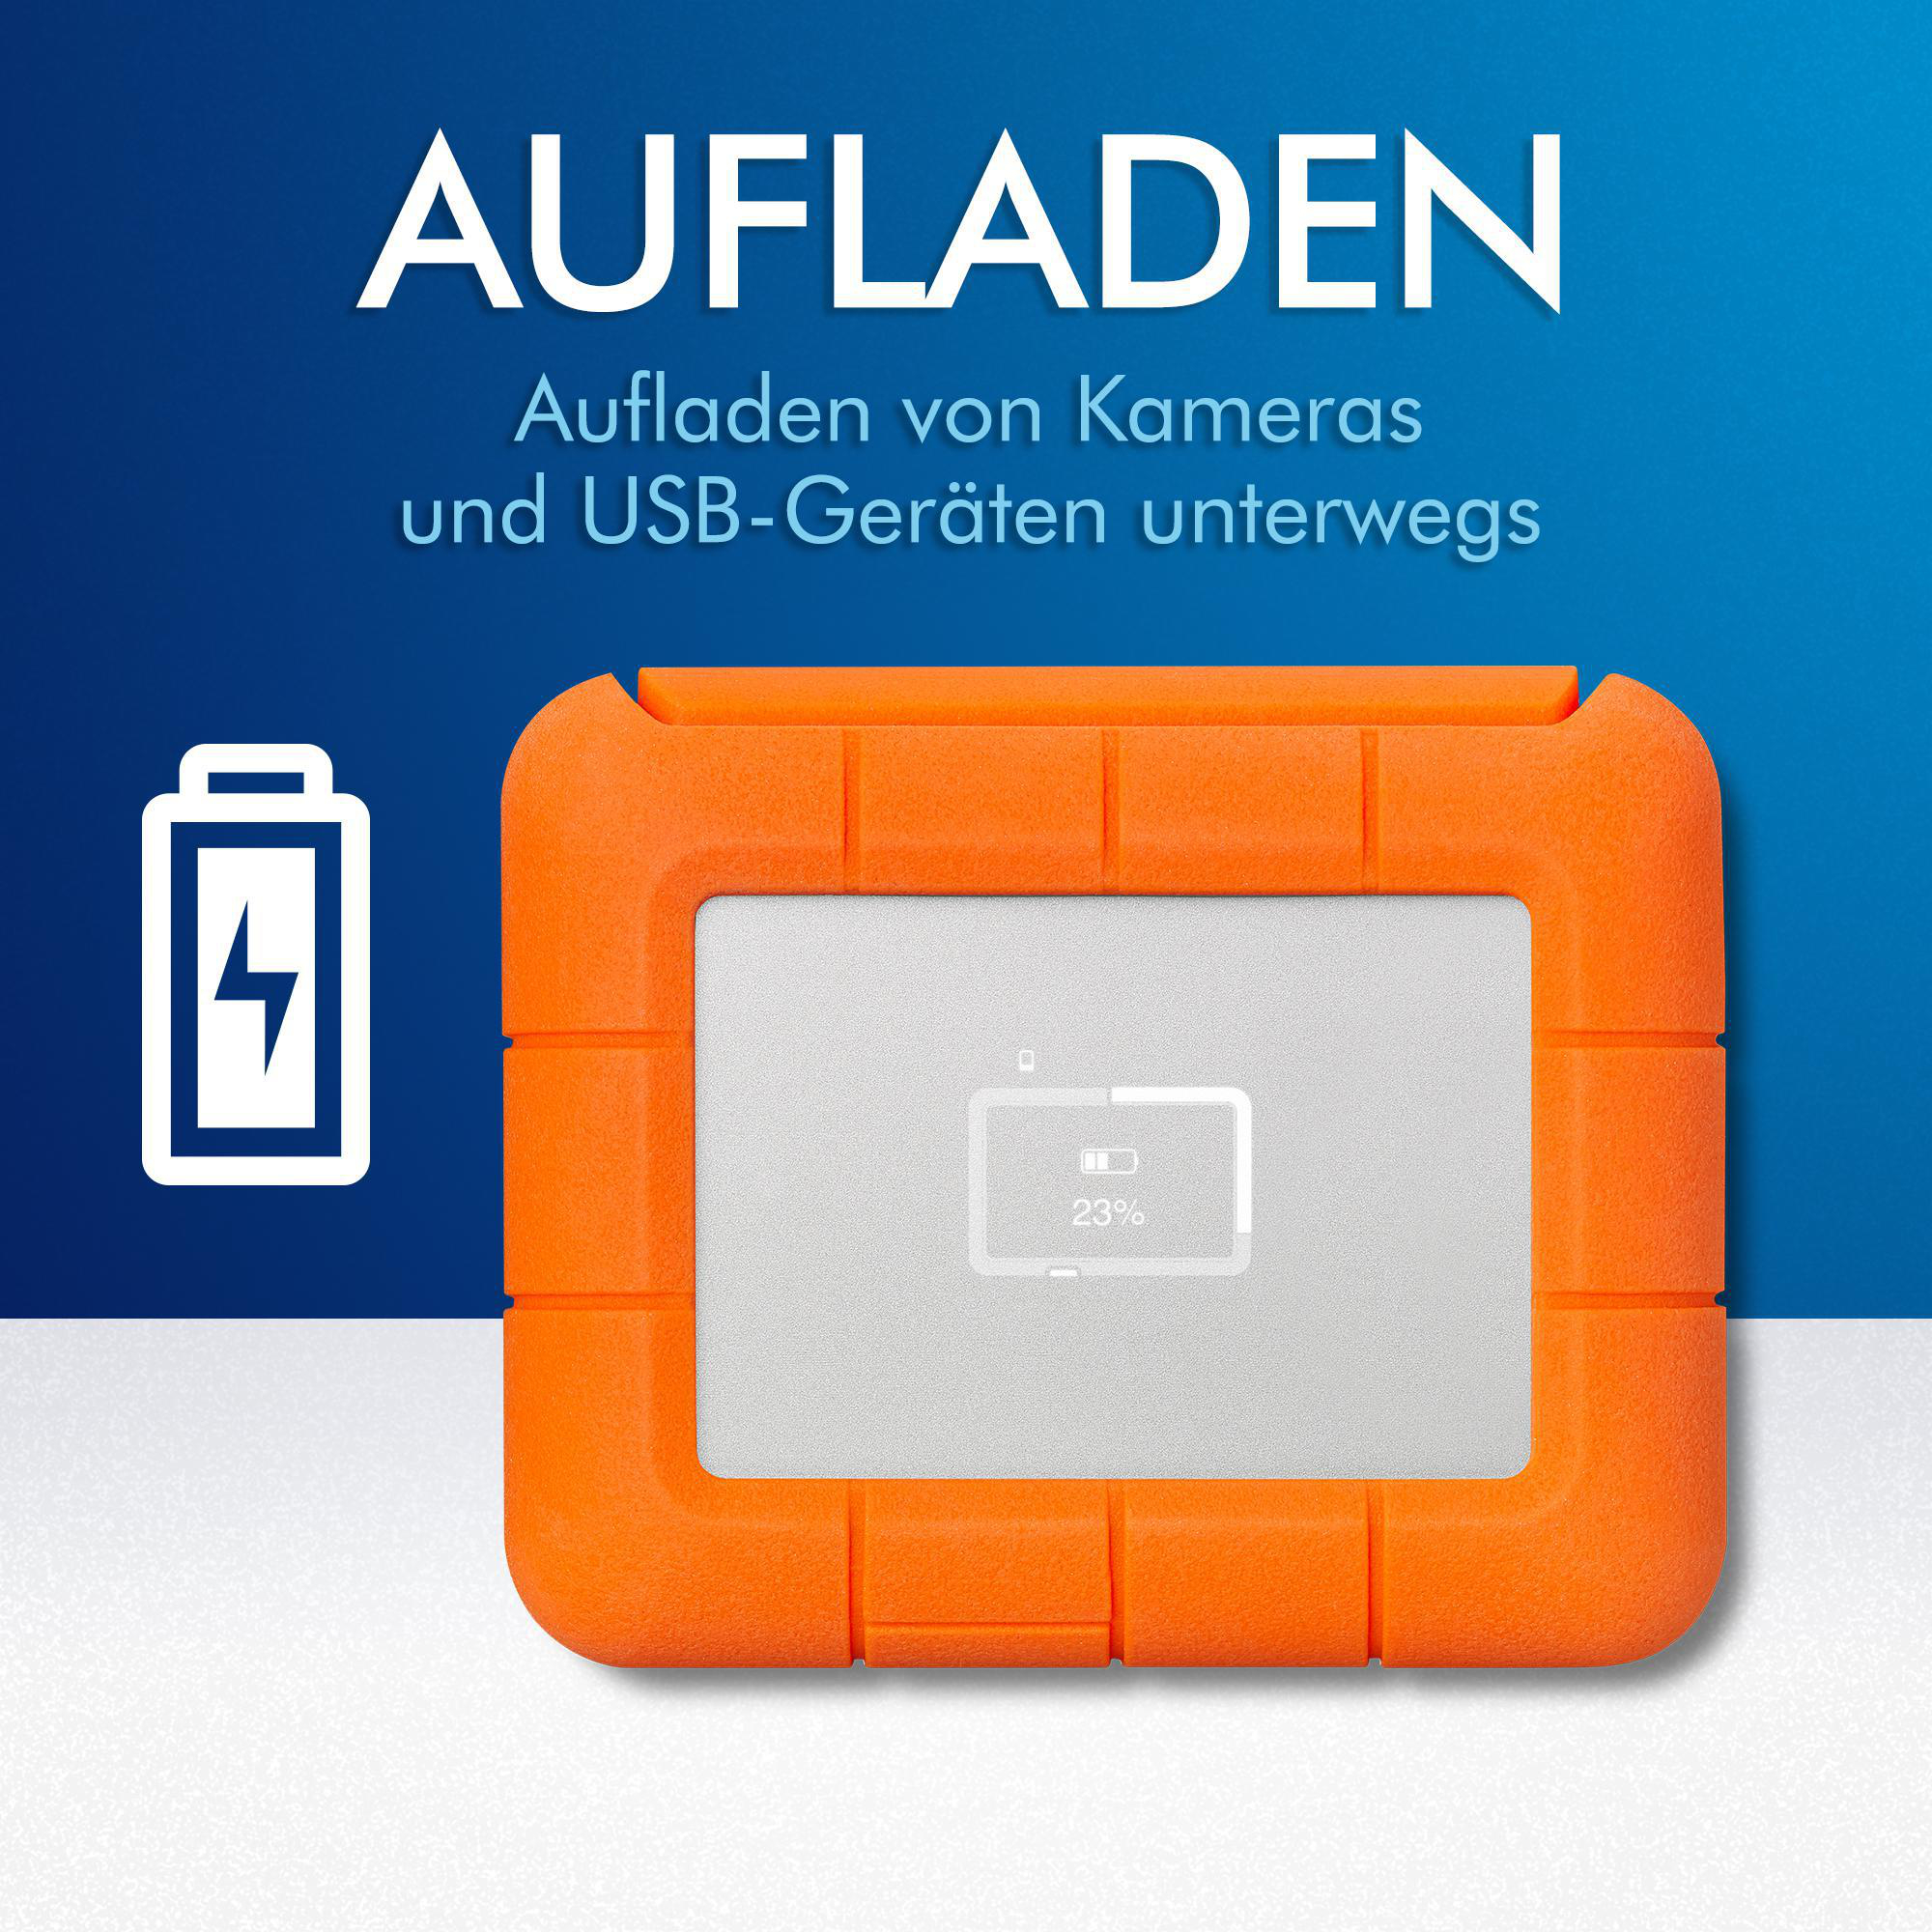 SSD, SSD Zoll, BOSS 2,5 1 Orange/Silver TB LACIE Rugged Festplatte, extern,